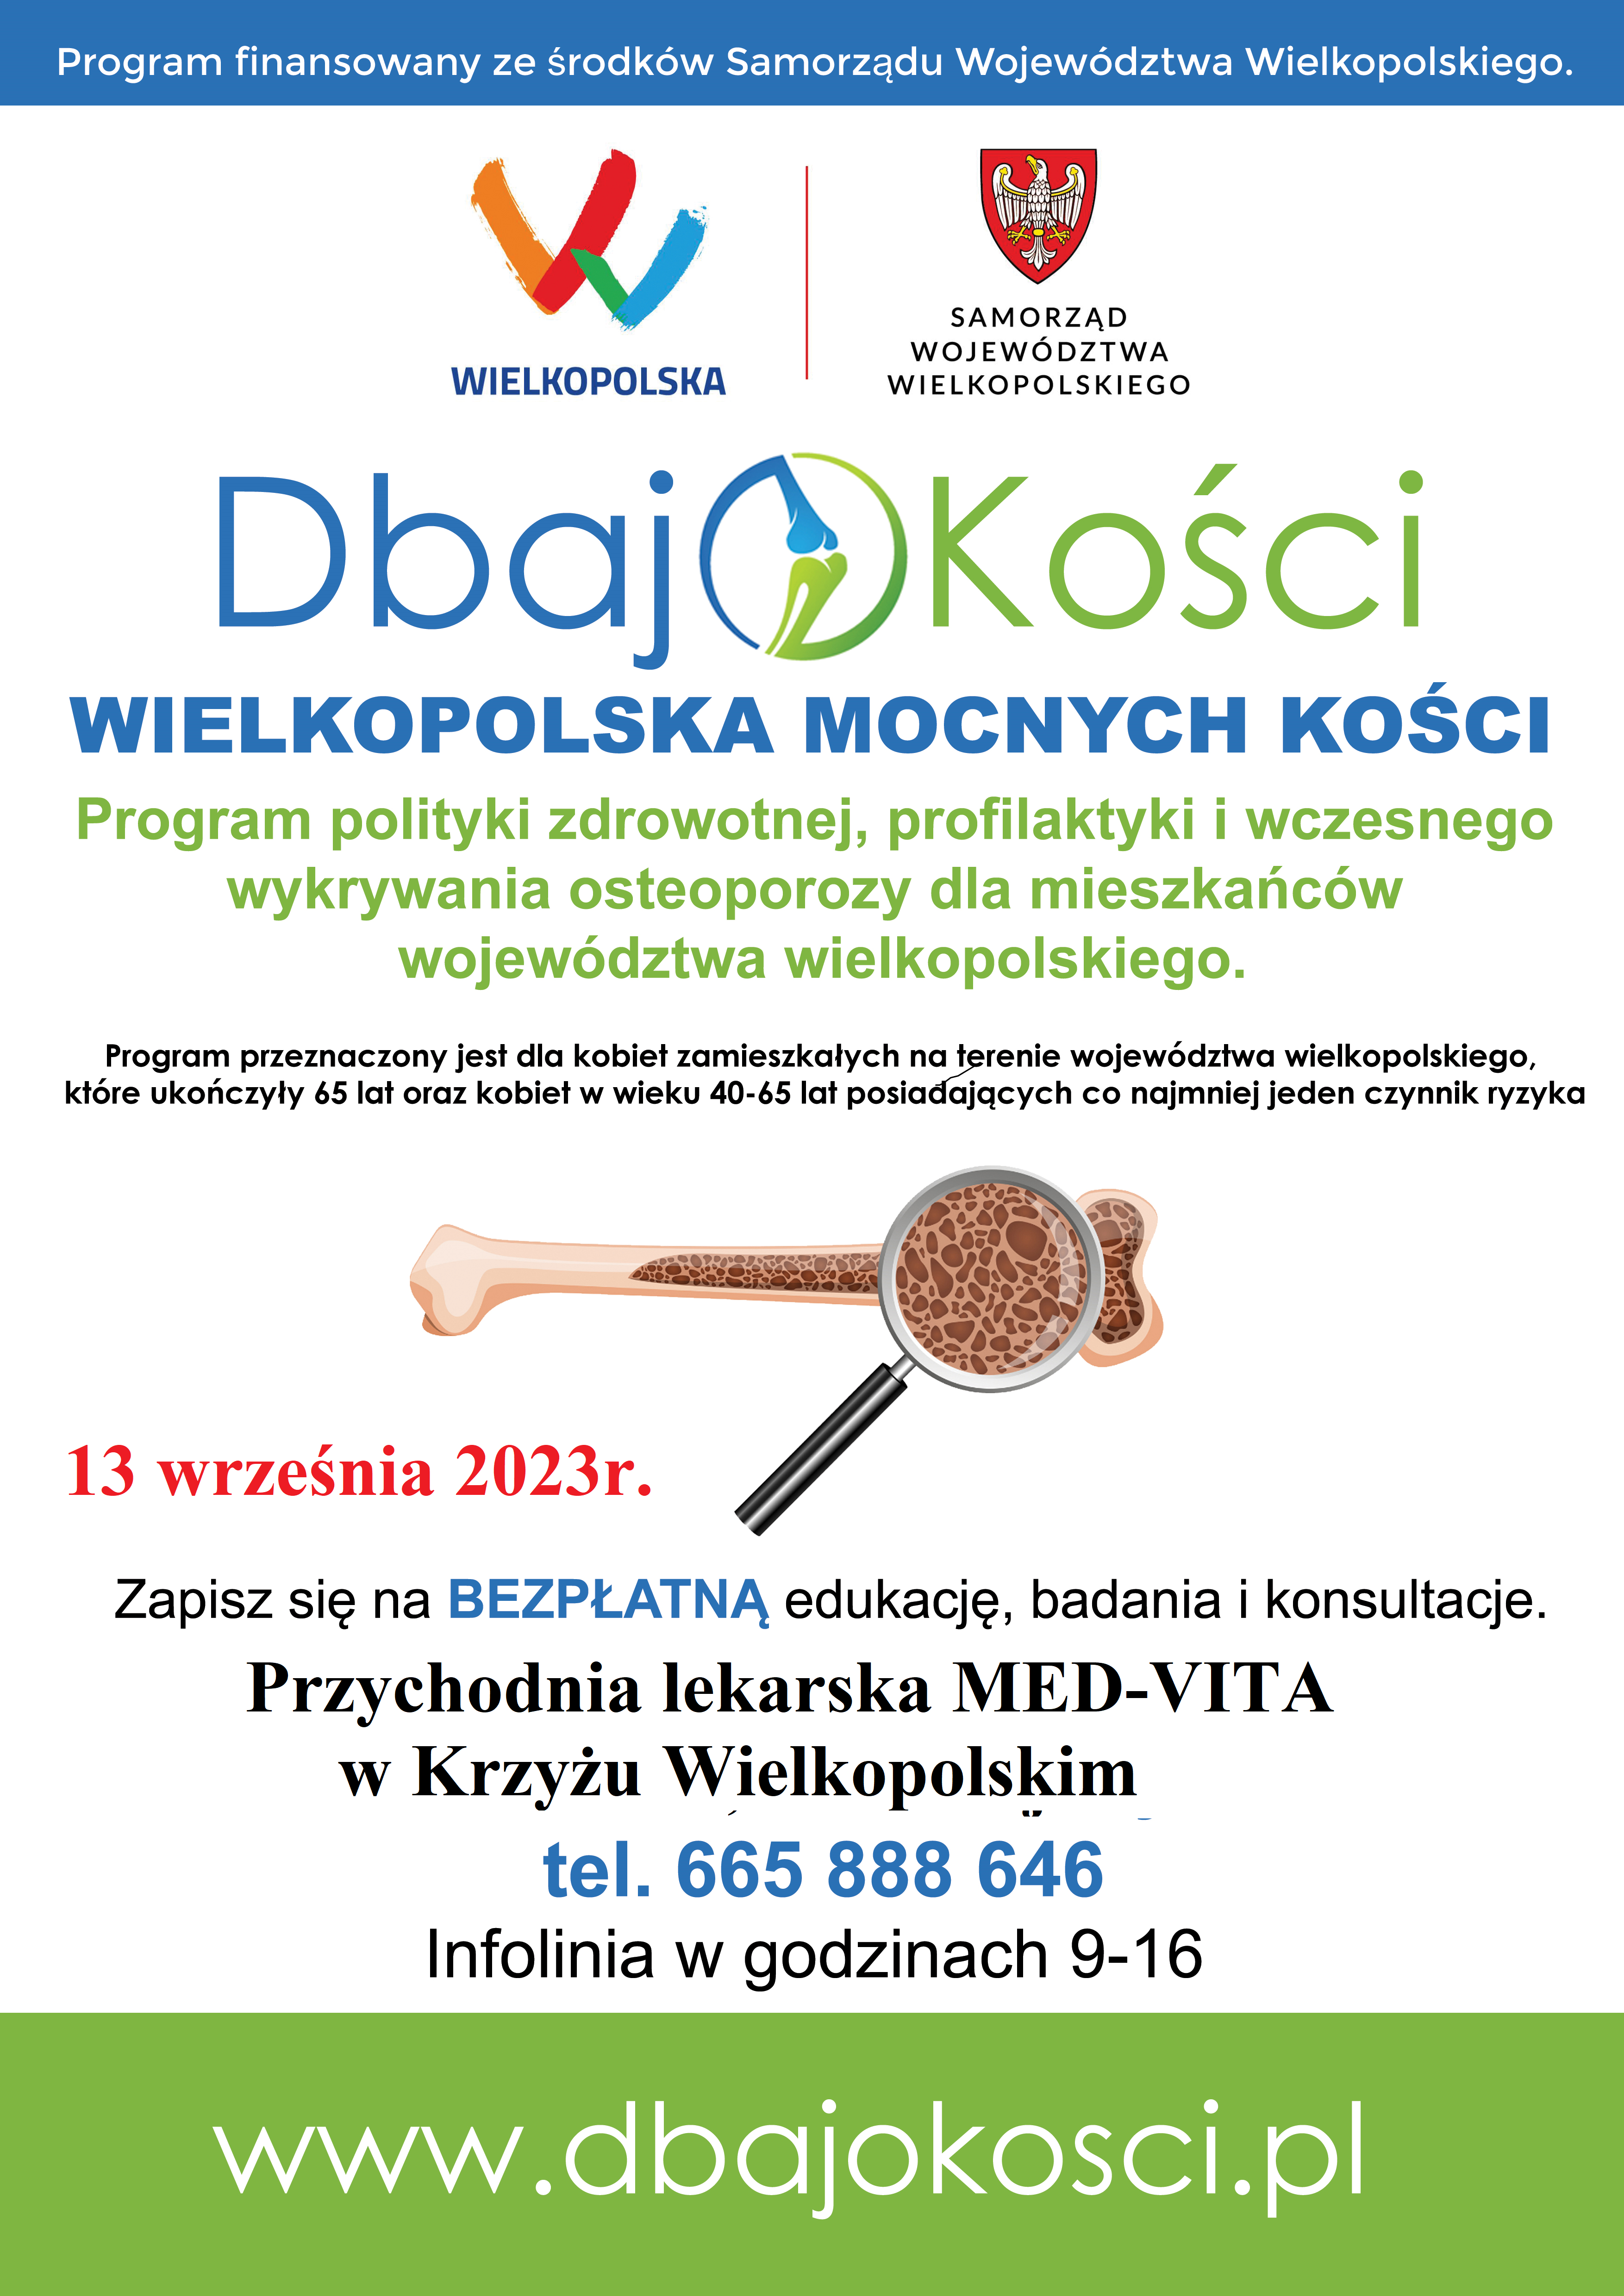 Bezpłatne badanie osteoporozy - Przychodnia lekarska MED-VITA Krzyż Wielkopolski 13 września 2023 tel. 665 888 646